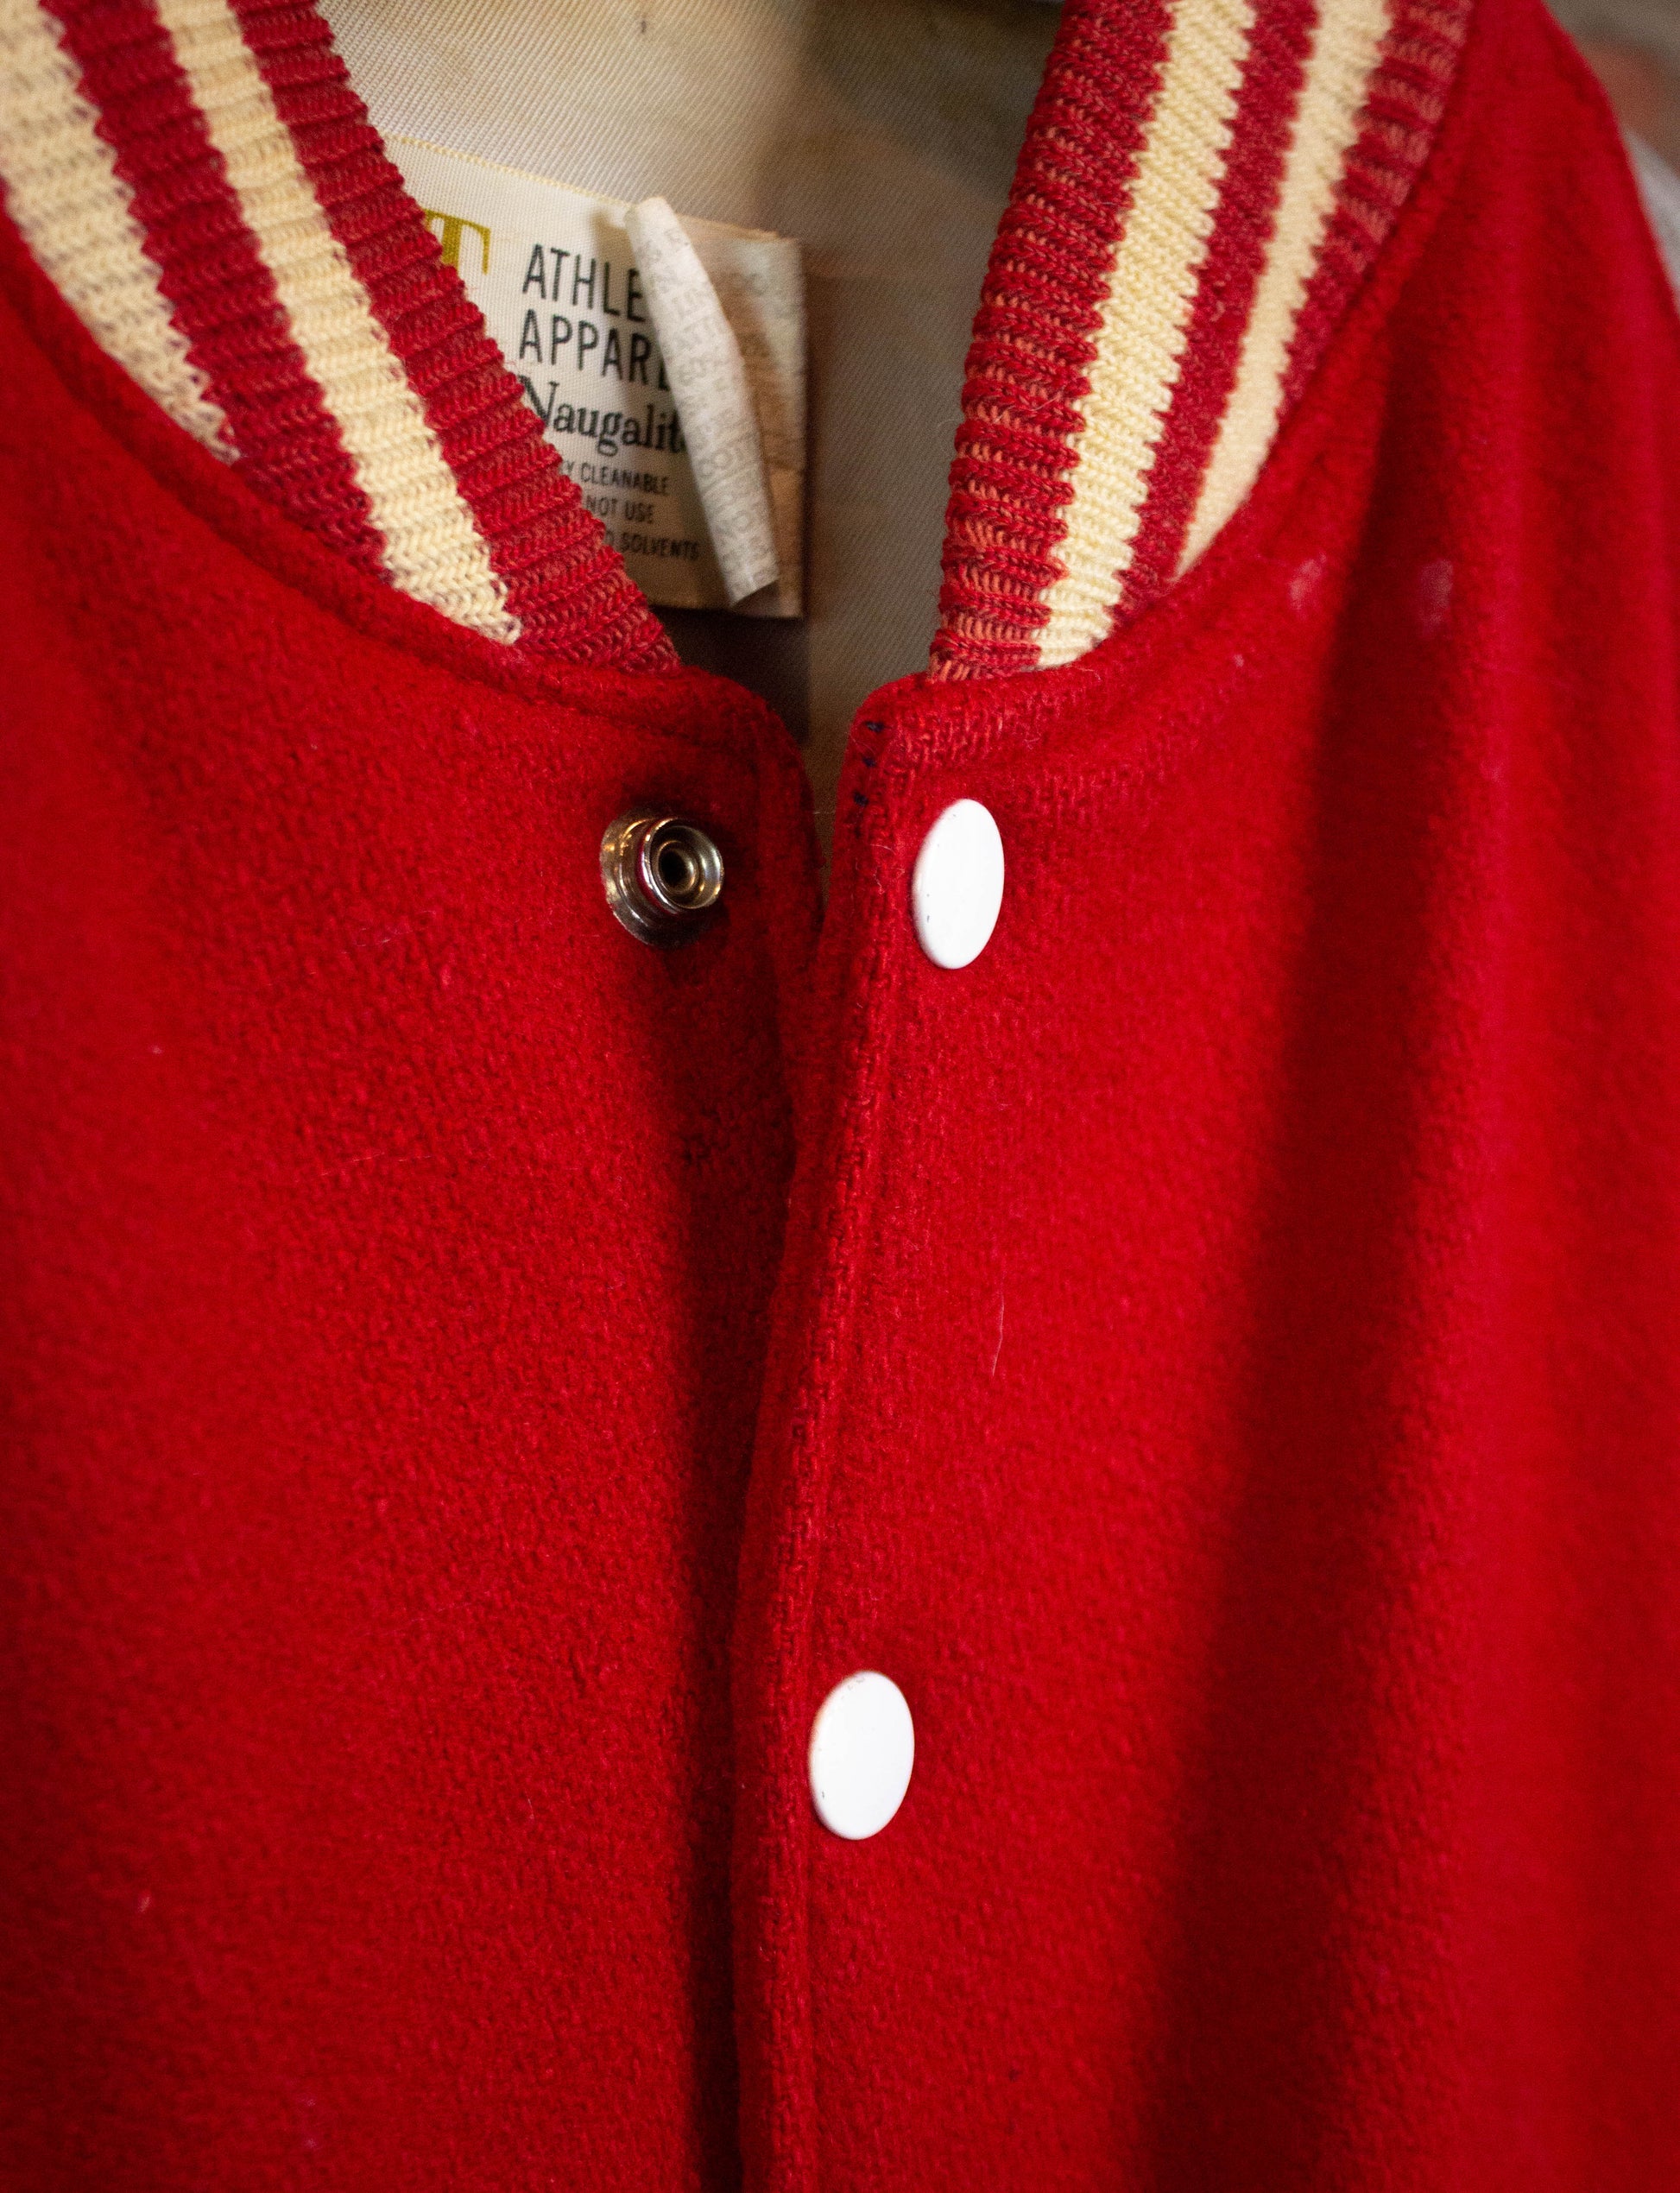 Vintage 60s Red Devils Naugalite Varsity Bomber Jacket Size 44 (XL)